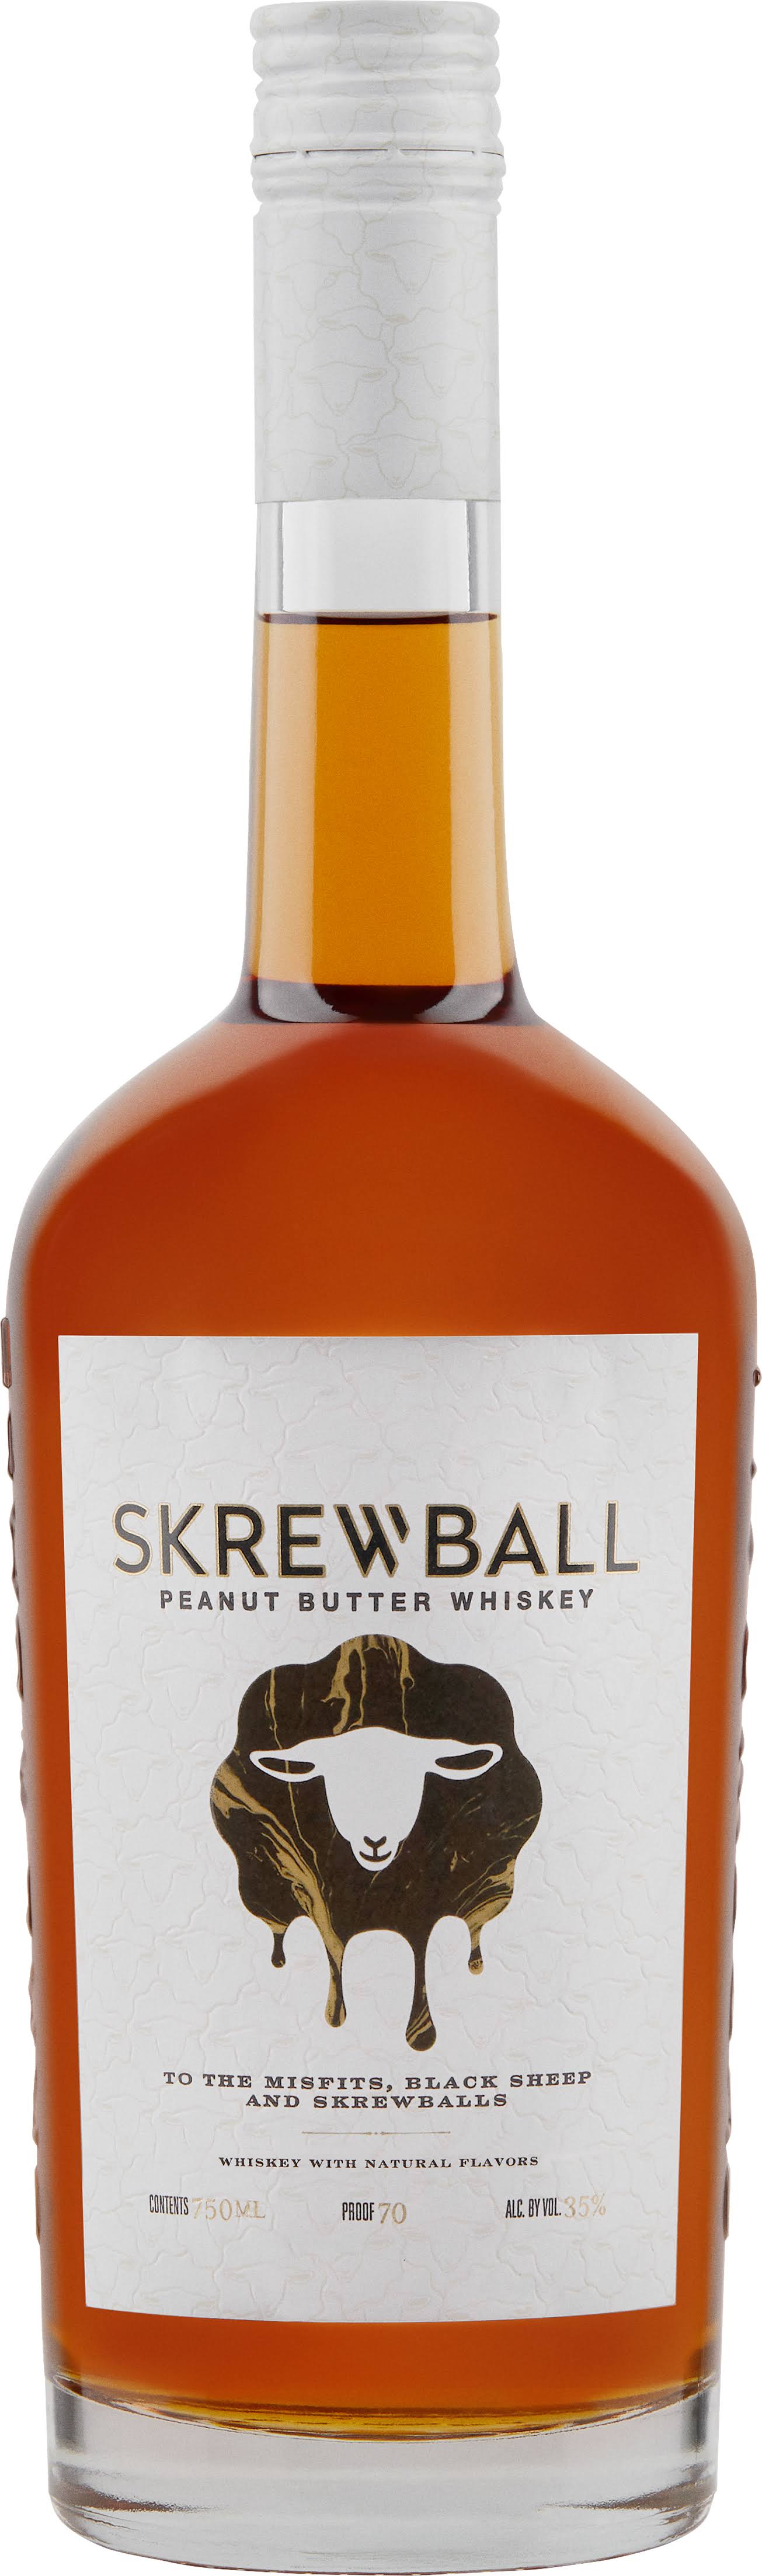 Skrewball Peanut Butter Whiskey 750 ml